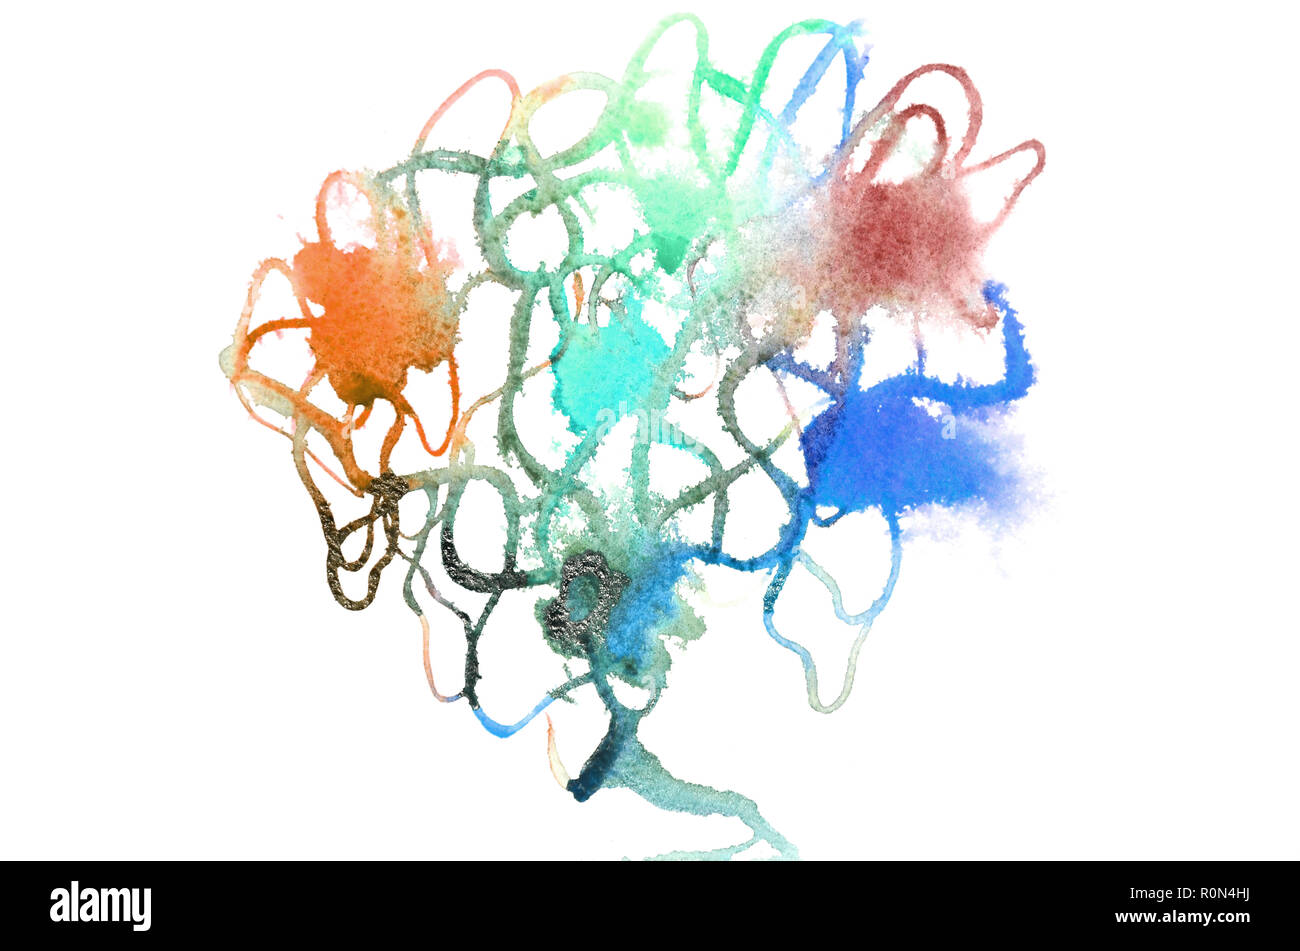 Image en arrière-plan à partir de taches d'aquarelle abstraite, formant une forme de couleurs différentes, comme un arbre . Banque D'Images